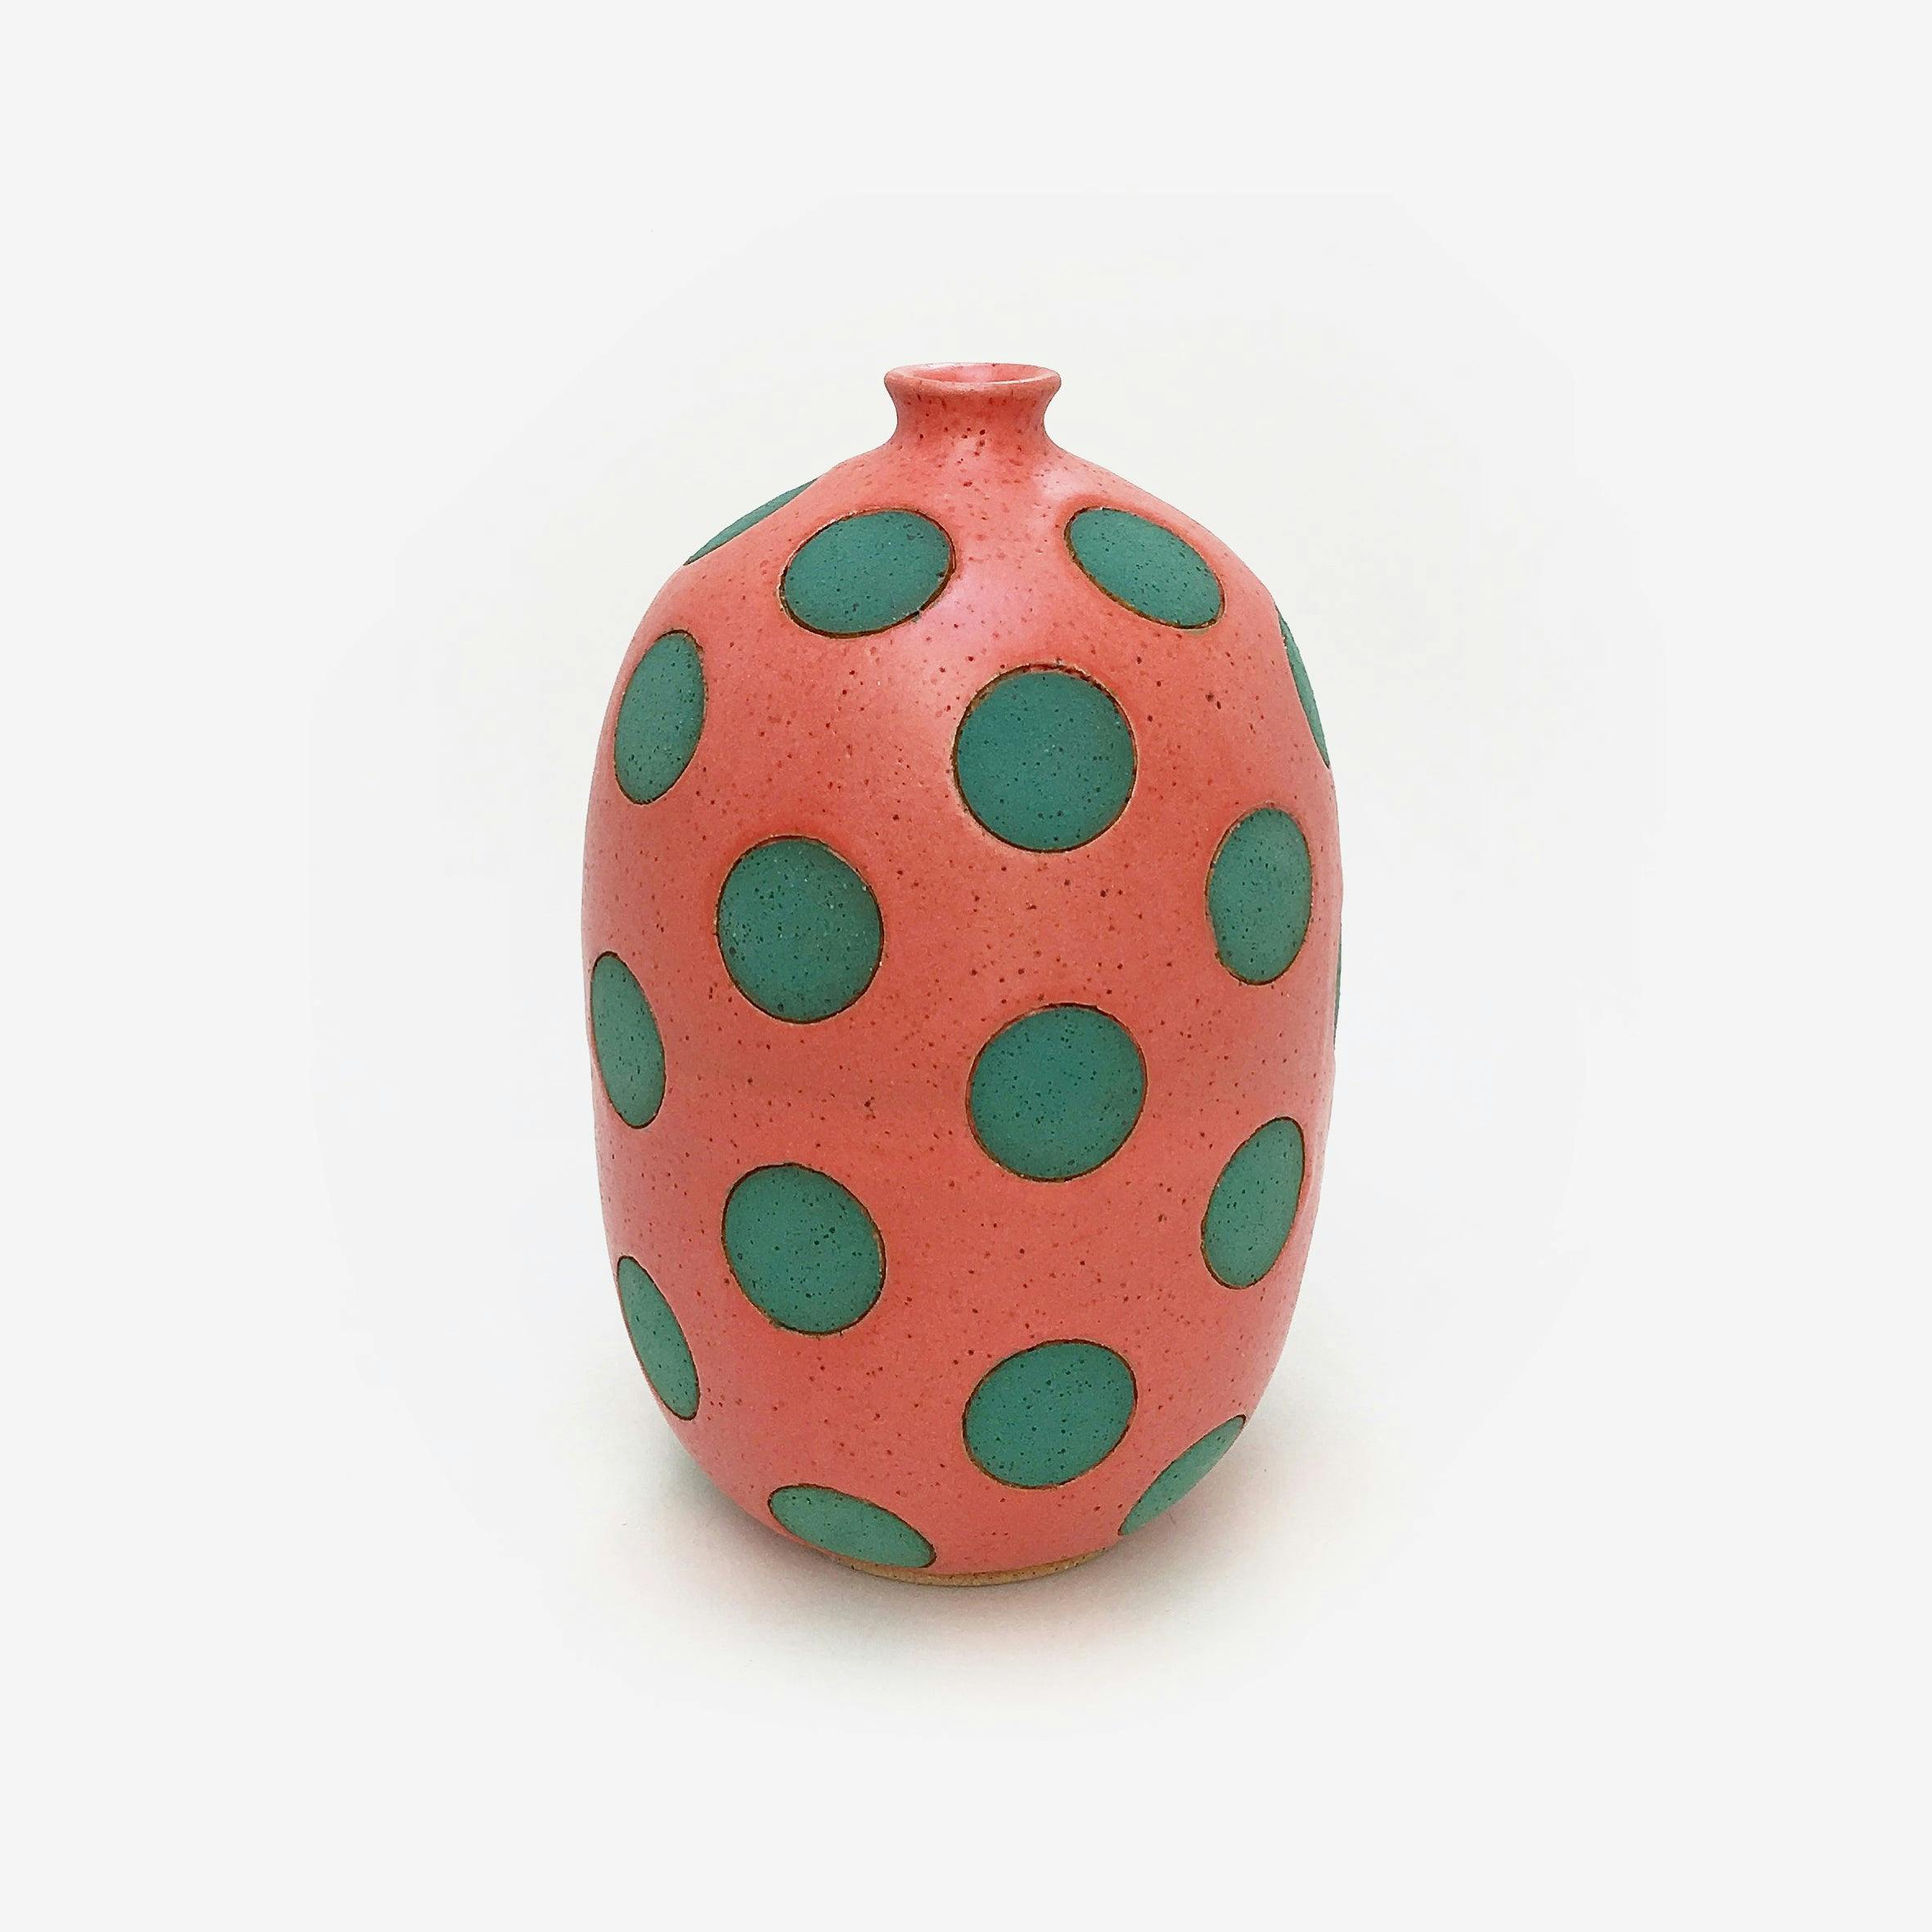 Matthew Ward - Coral and Green Polka Dot Vase - Sculpture